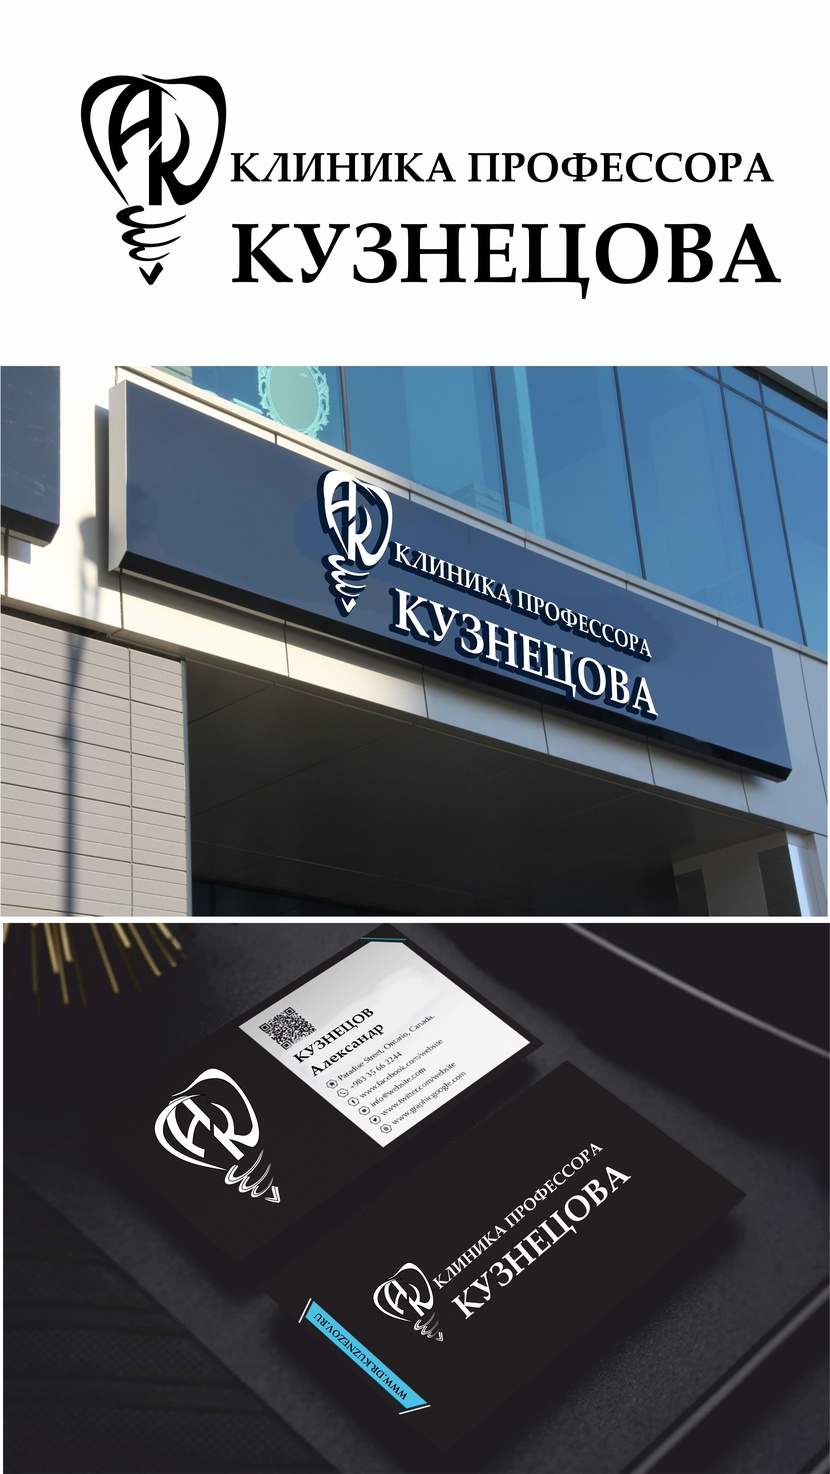 AK - Разработка логотипа и фирменного стиля для новой авторской стоматологии "Клиника профессора Кузнецова"